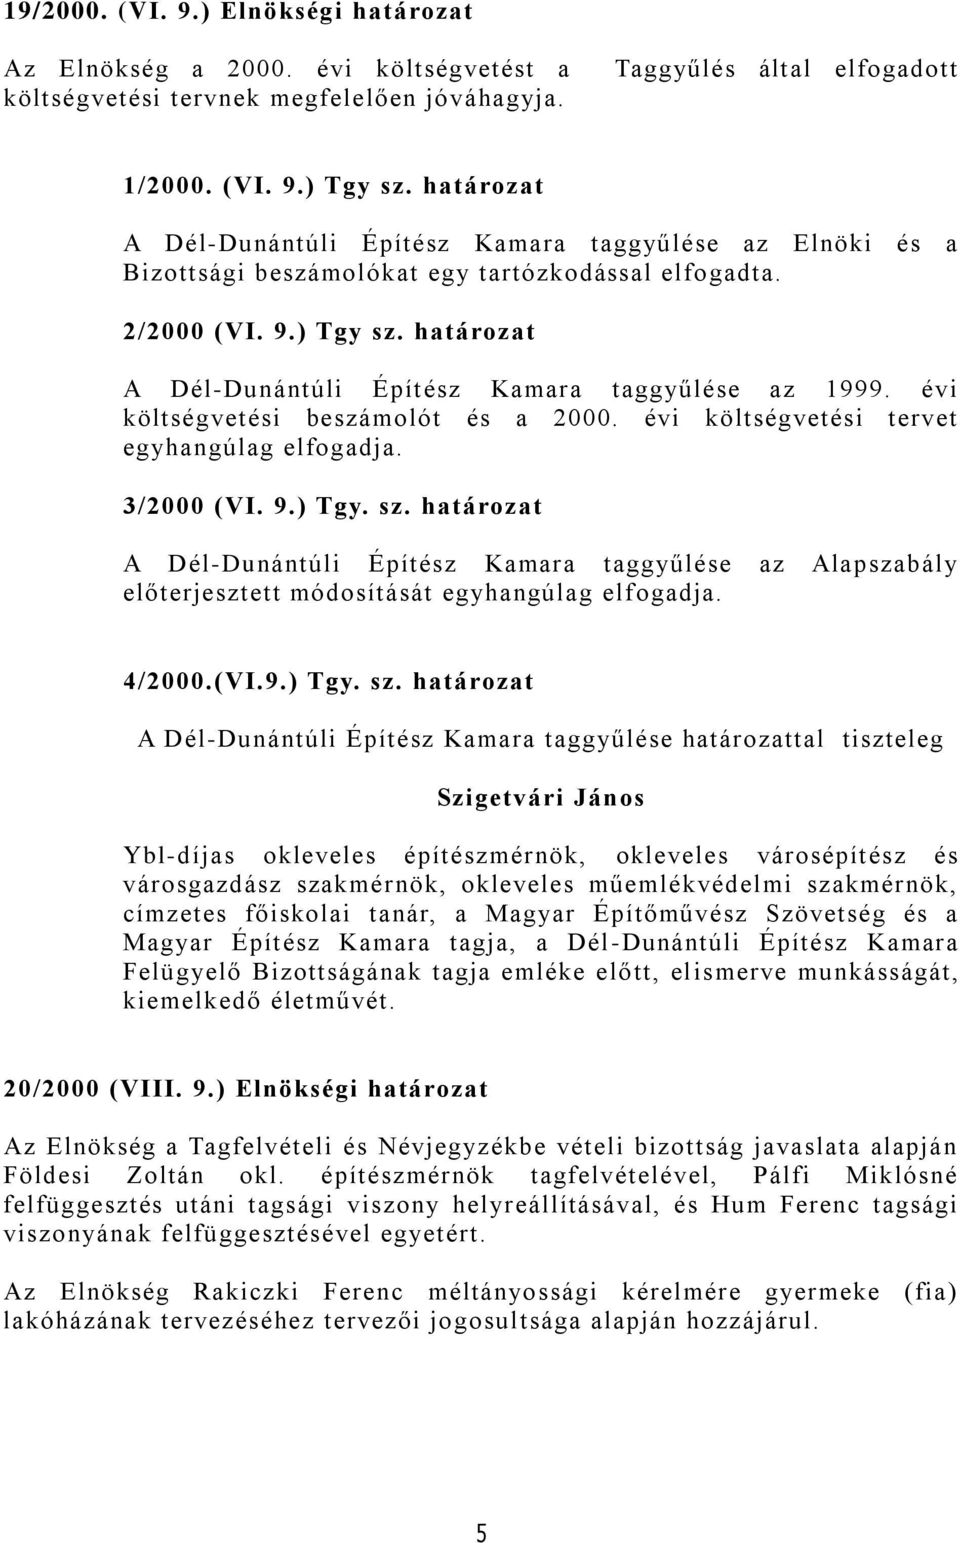 határozat A Dél-Dunántúli Építész Kamara taggyűlése az 1999. évi költségvetési beszámolót és a 2000. évi költségvetési tervet egyhangúlag elfogadja. 3/2000 (VI. 9.) Tgy. sz.